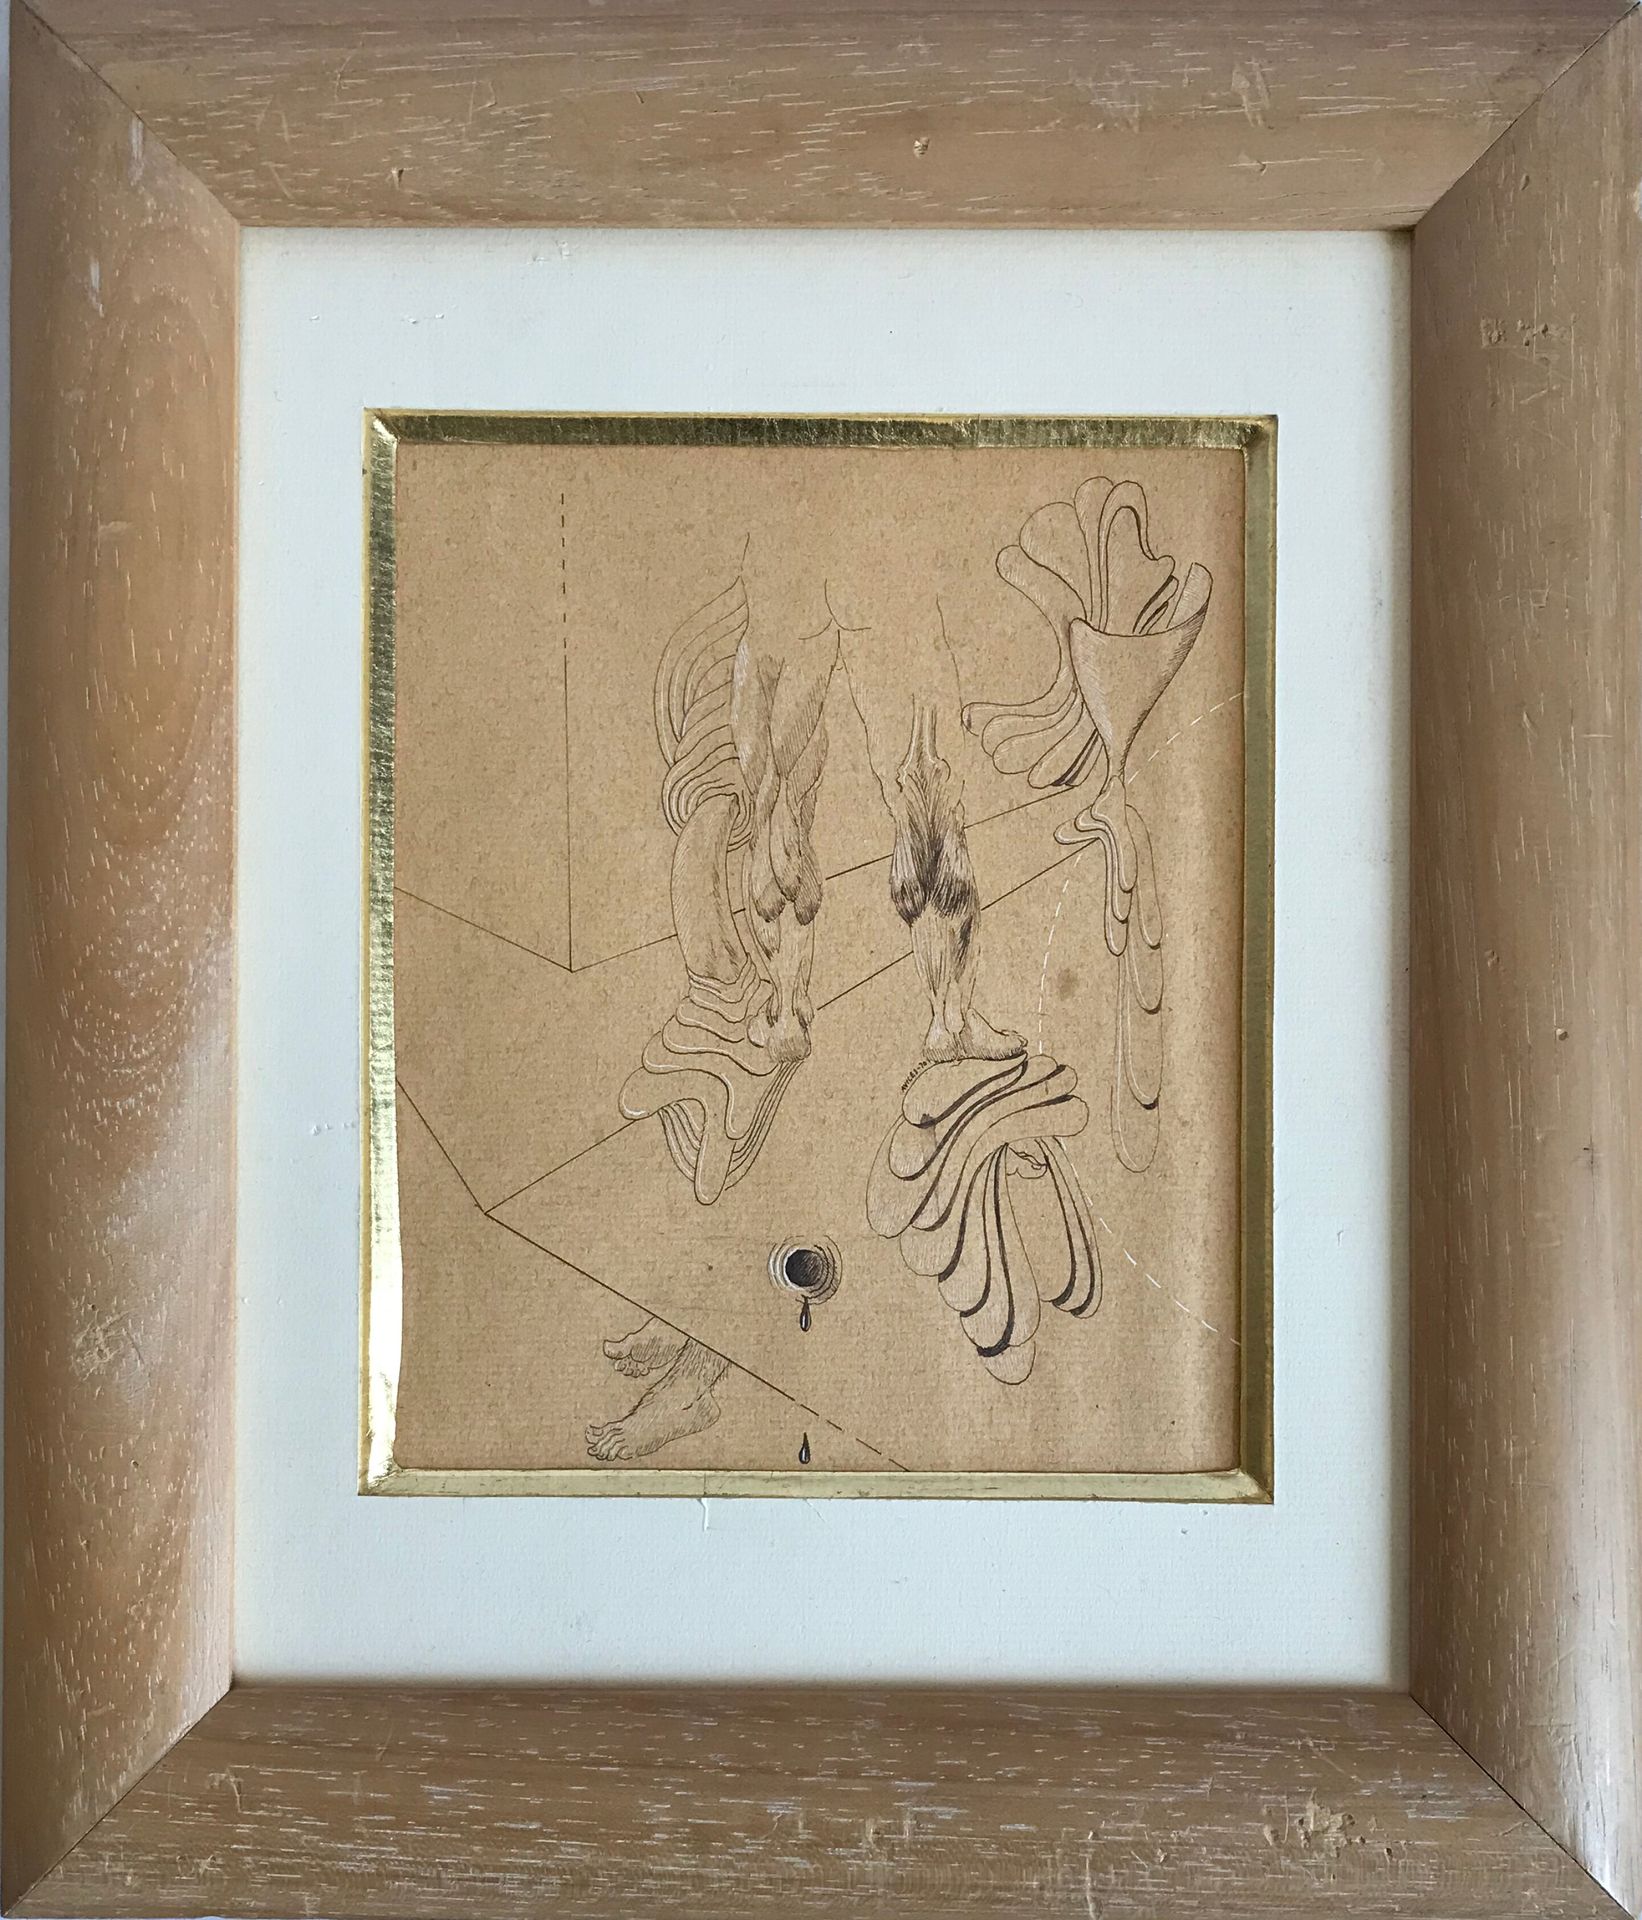 Null 阿维莱斯--20世纪

有腿、脚和窗帘的超现实主义构图

棕色纸上的水墨画和白色高光

画中有签名，日期为70

17,5 x 14,5 cm

框架